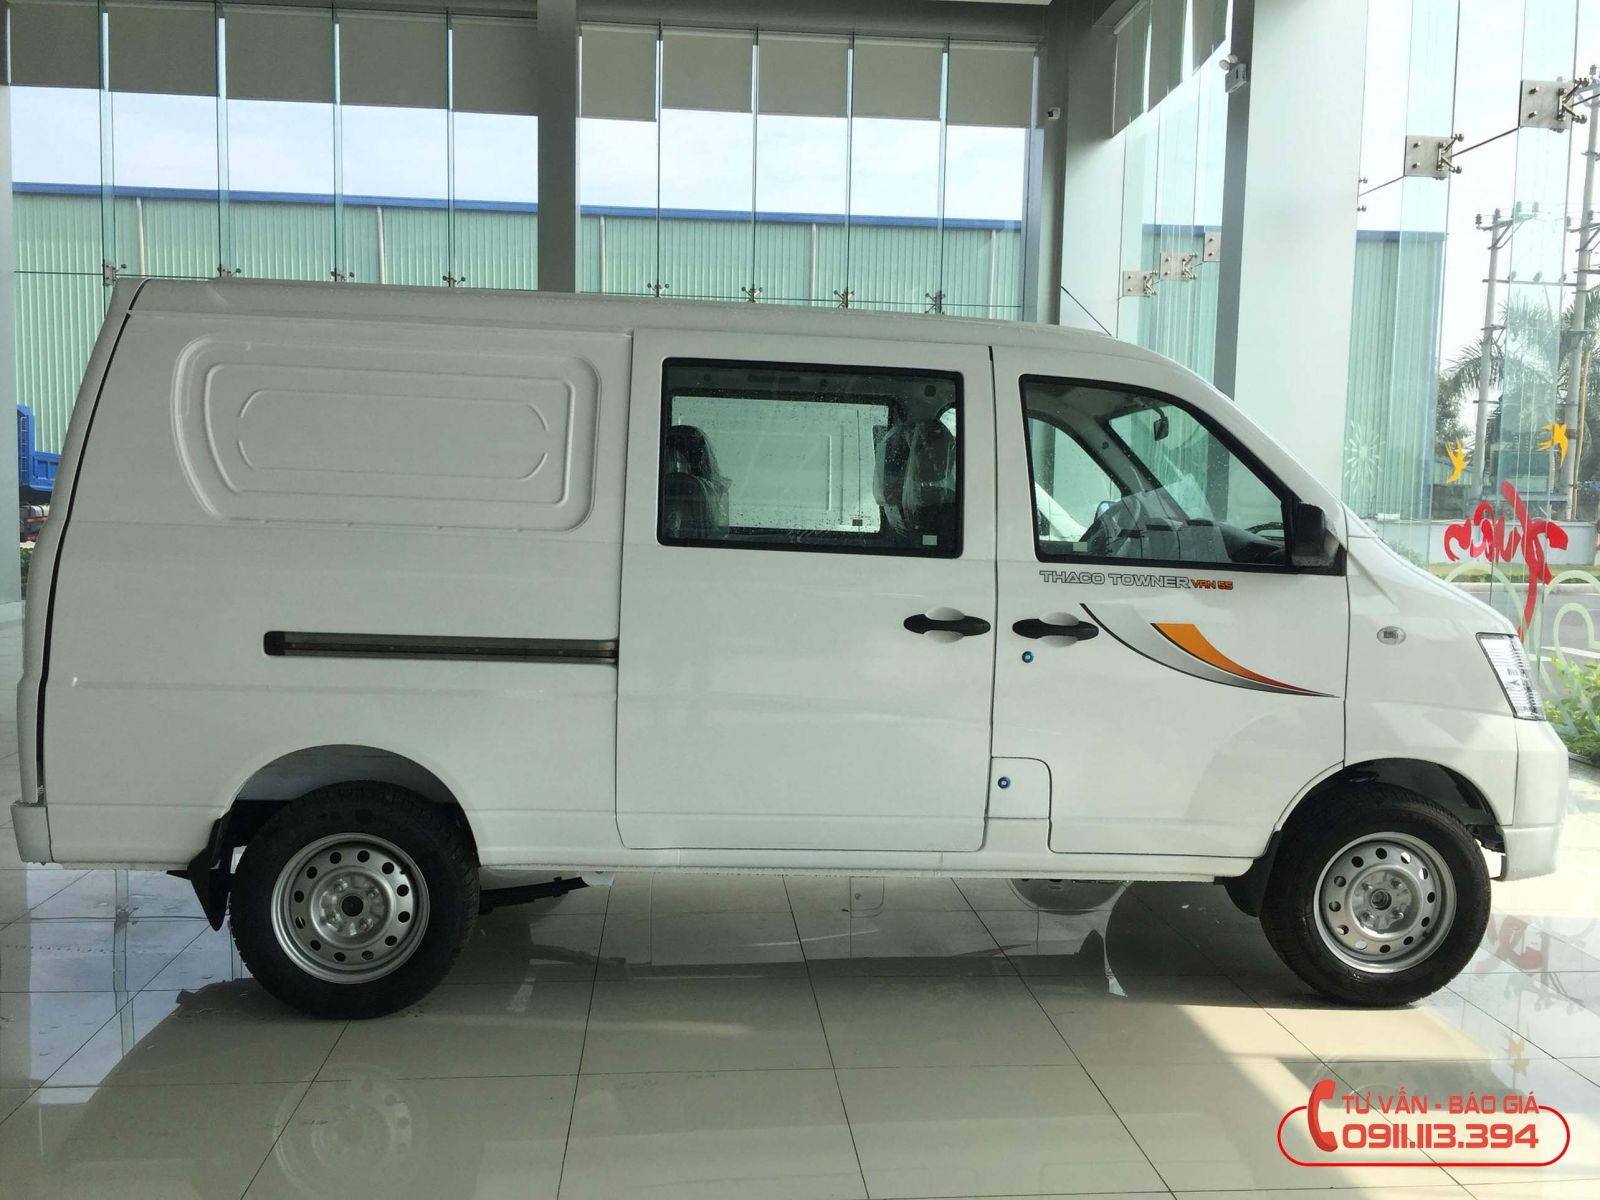 Carbiz.vn | Chevrolet Spark bản Van nhập Hàn Quốc hiếm gặp tại Việt Nam